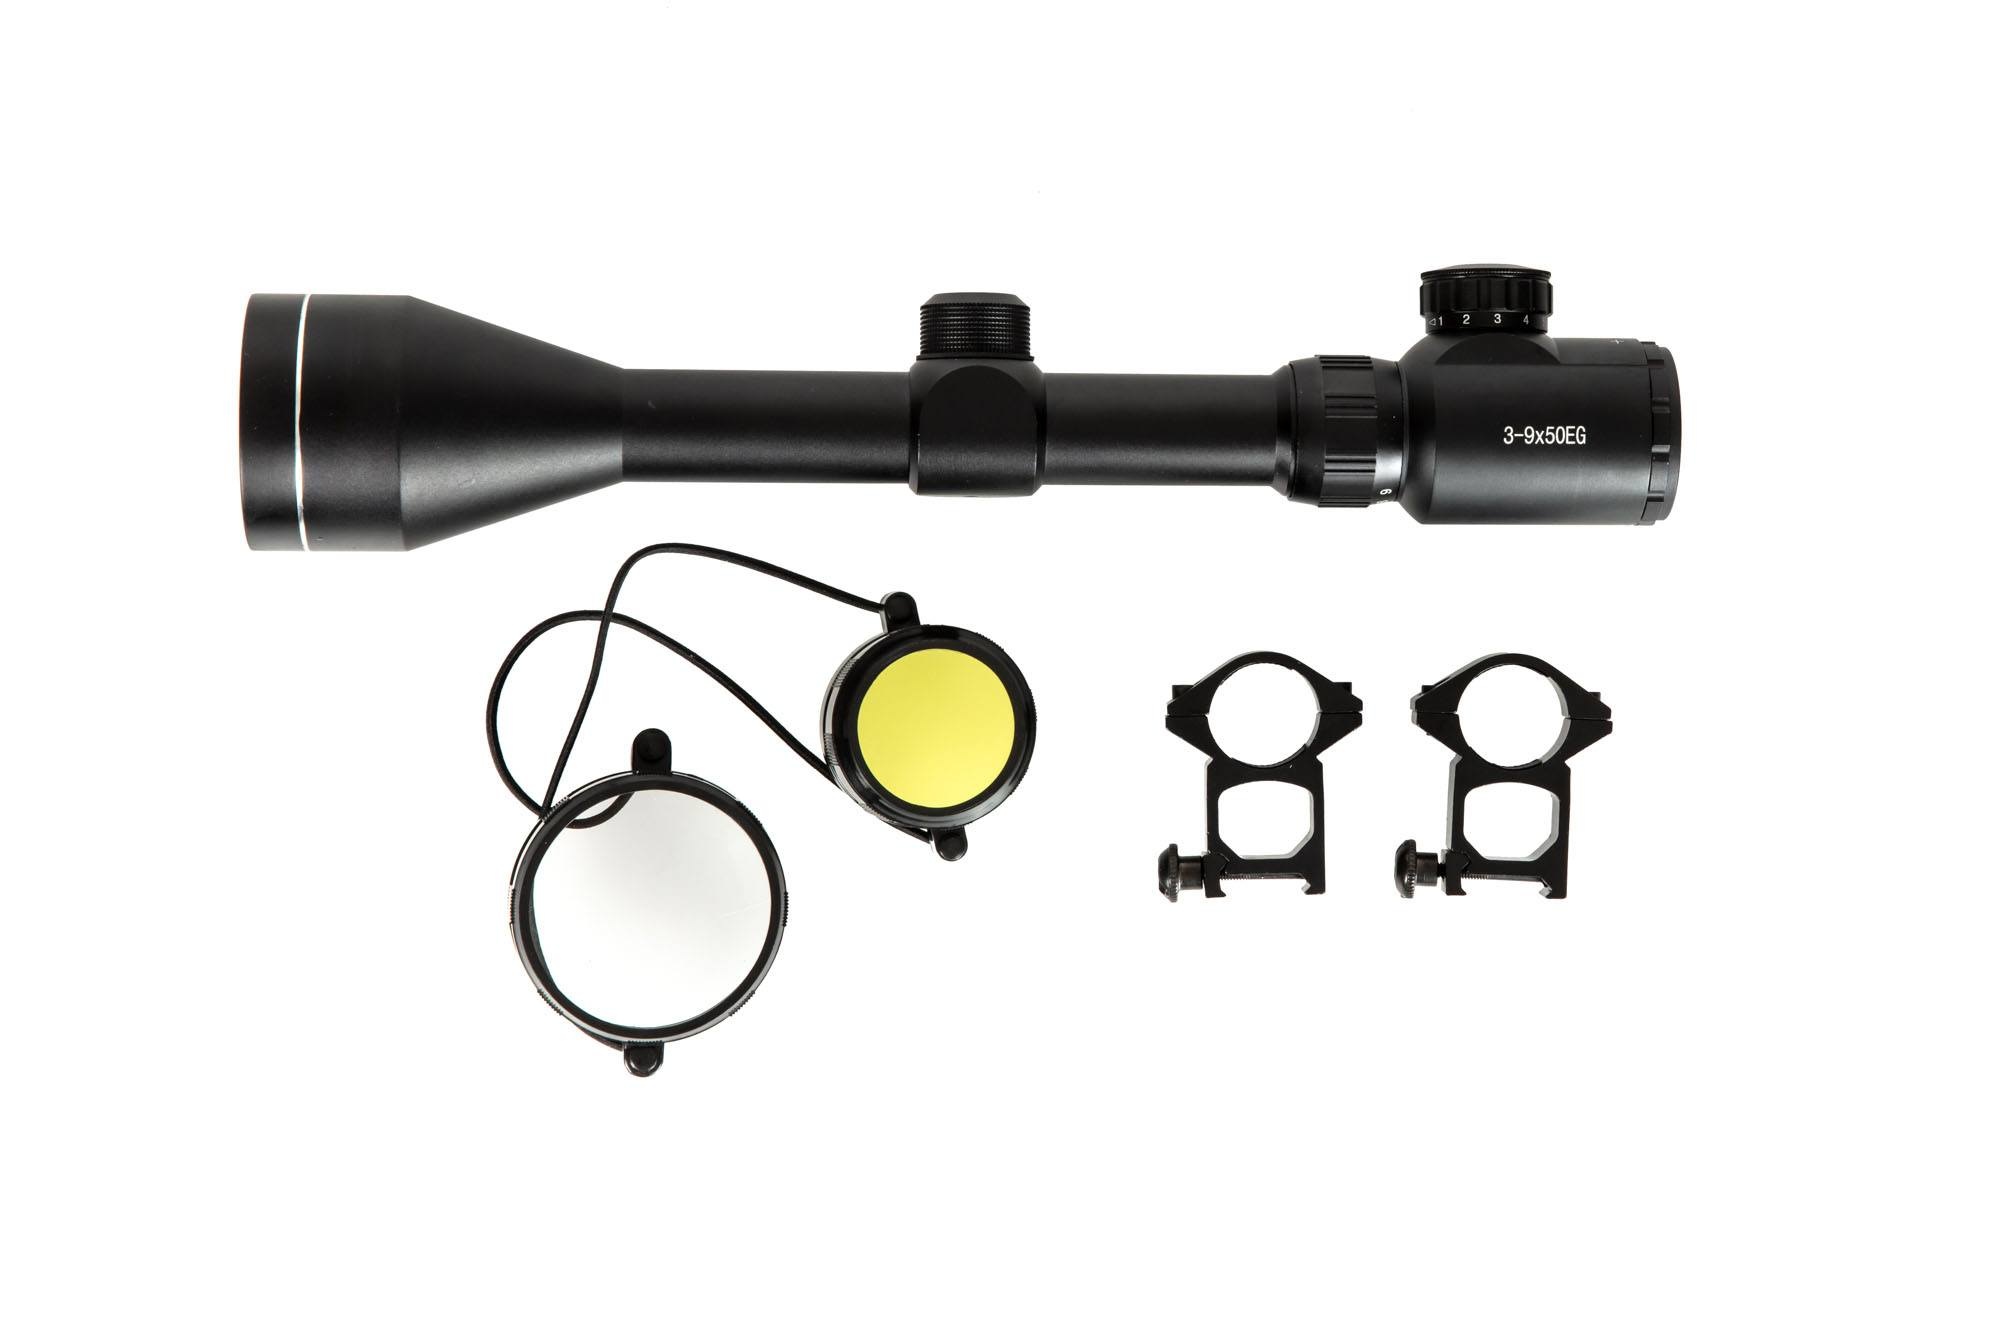 Theta Optics 3-9x50 Zielfernrohr Rangefinder beleuchtet - BK